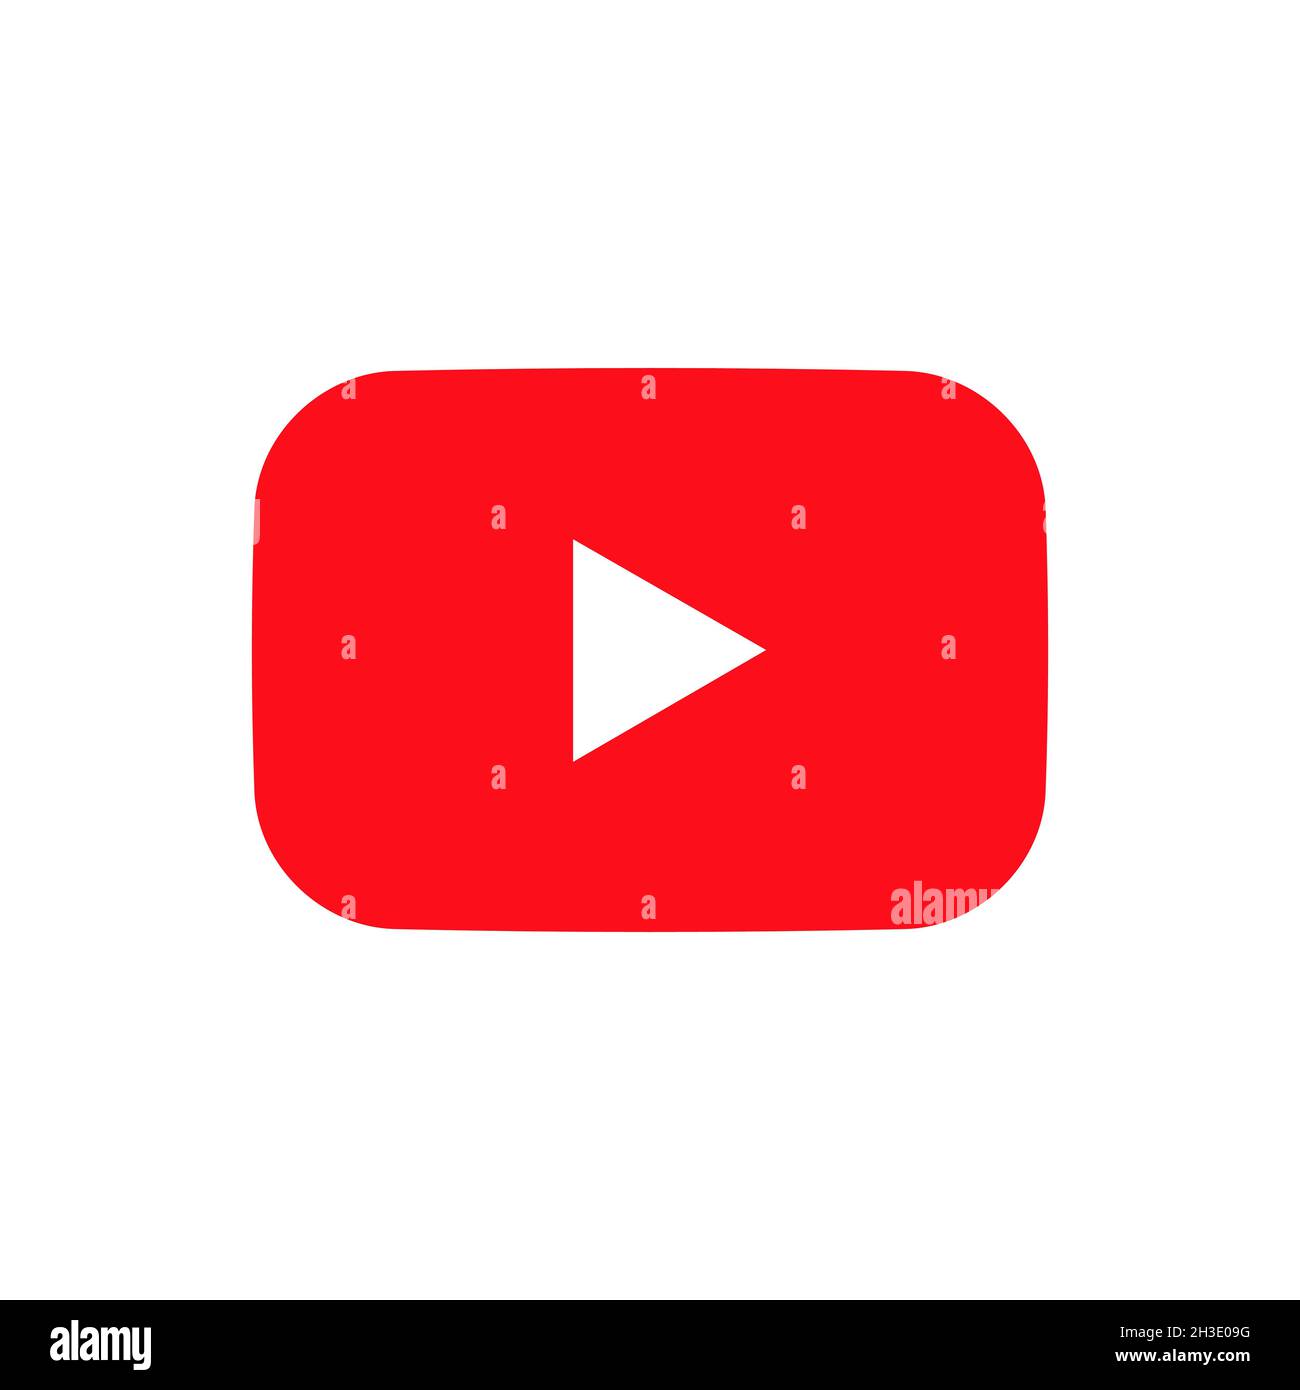 Logo YouTube đẹp và thu hút đã trở nên không thể thiếu trong cuộc sống online hiện đại. Nếu bạn là một tín đồ của trang web chia sẻ video nổi tiếng này, hãy cùng chúng tôi khám phá ngay chi tiết thiết kế của logo Youtube.